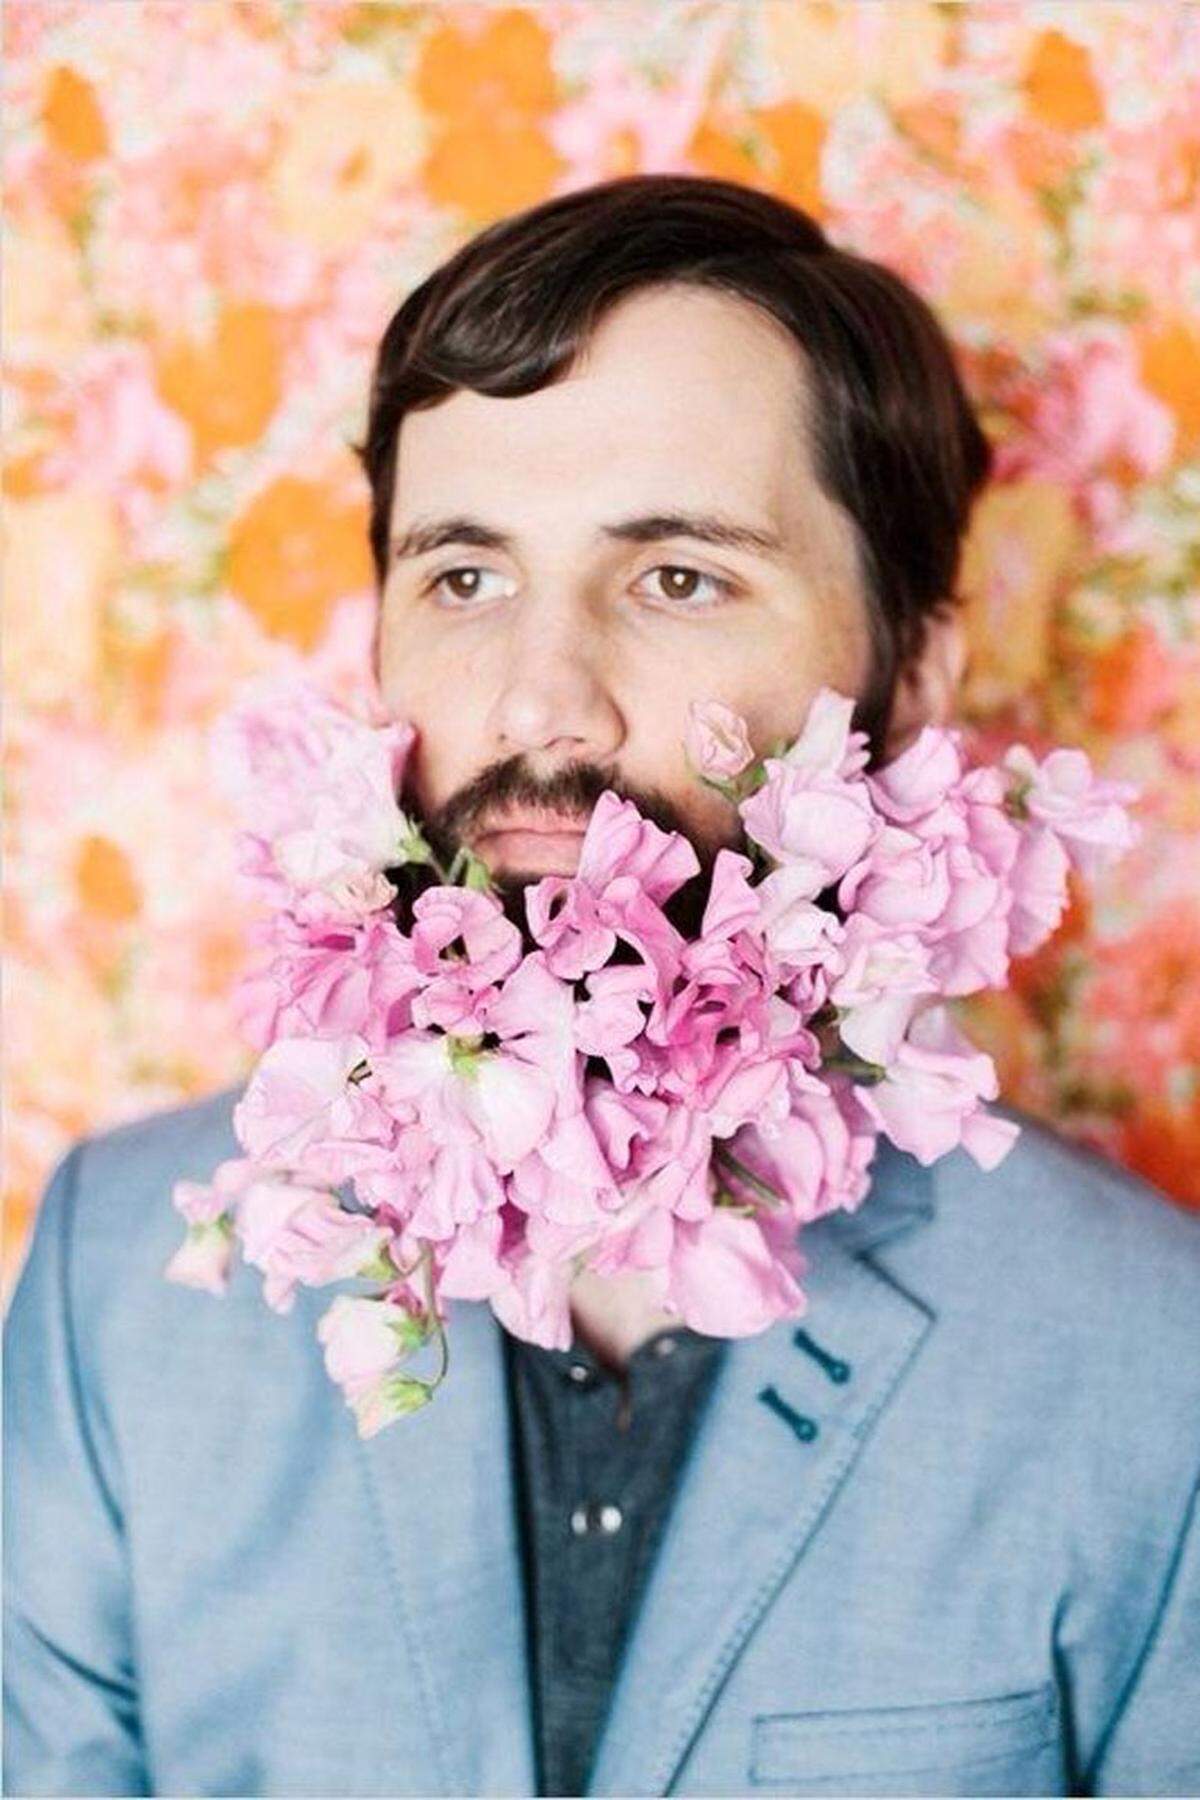 Der „Flower Beard“ sei so etwas wie das männliche Pendant zum Blumenkranz, den Frauen seit Kurzem wiederentdeckt haben und vorzugsweise auf Festivals oder Hochzeiten im Haar tragen, sagt die Modebloggerin Anne Feldkamp.